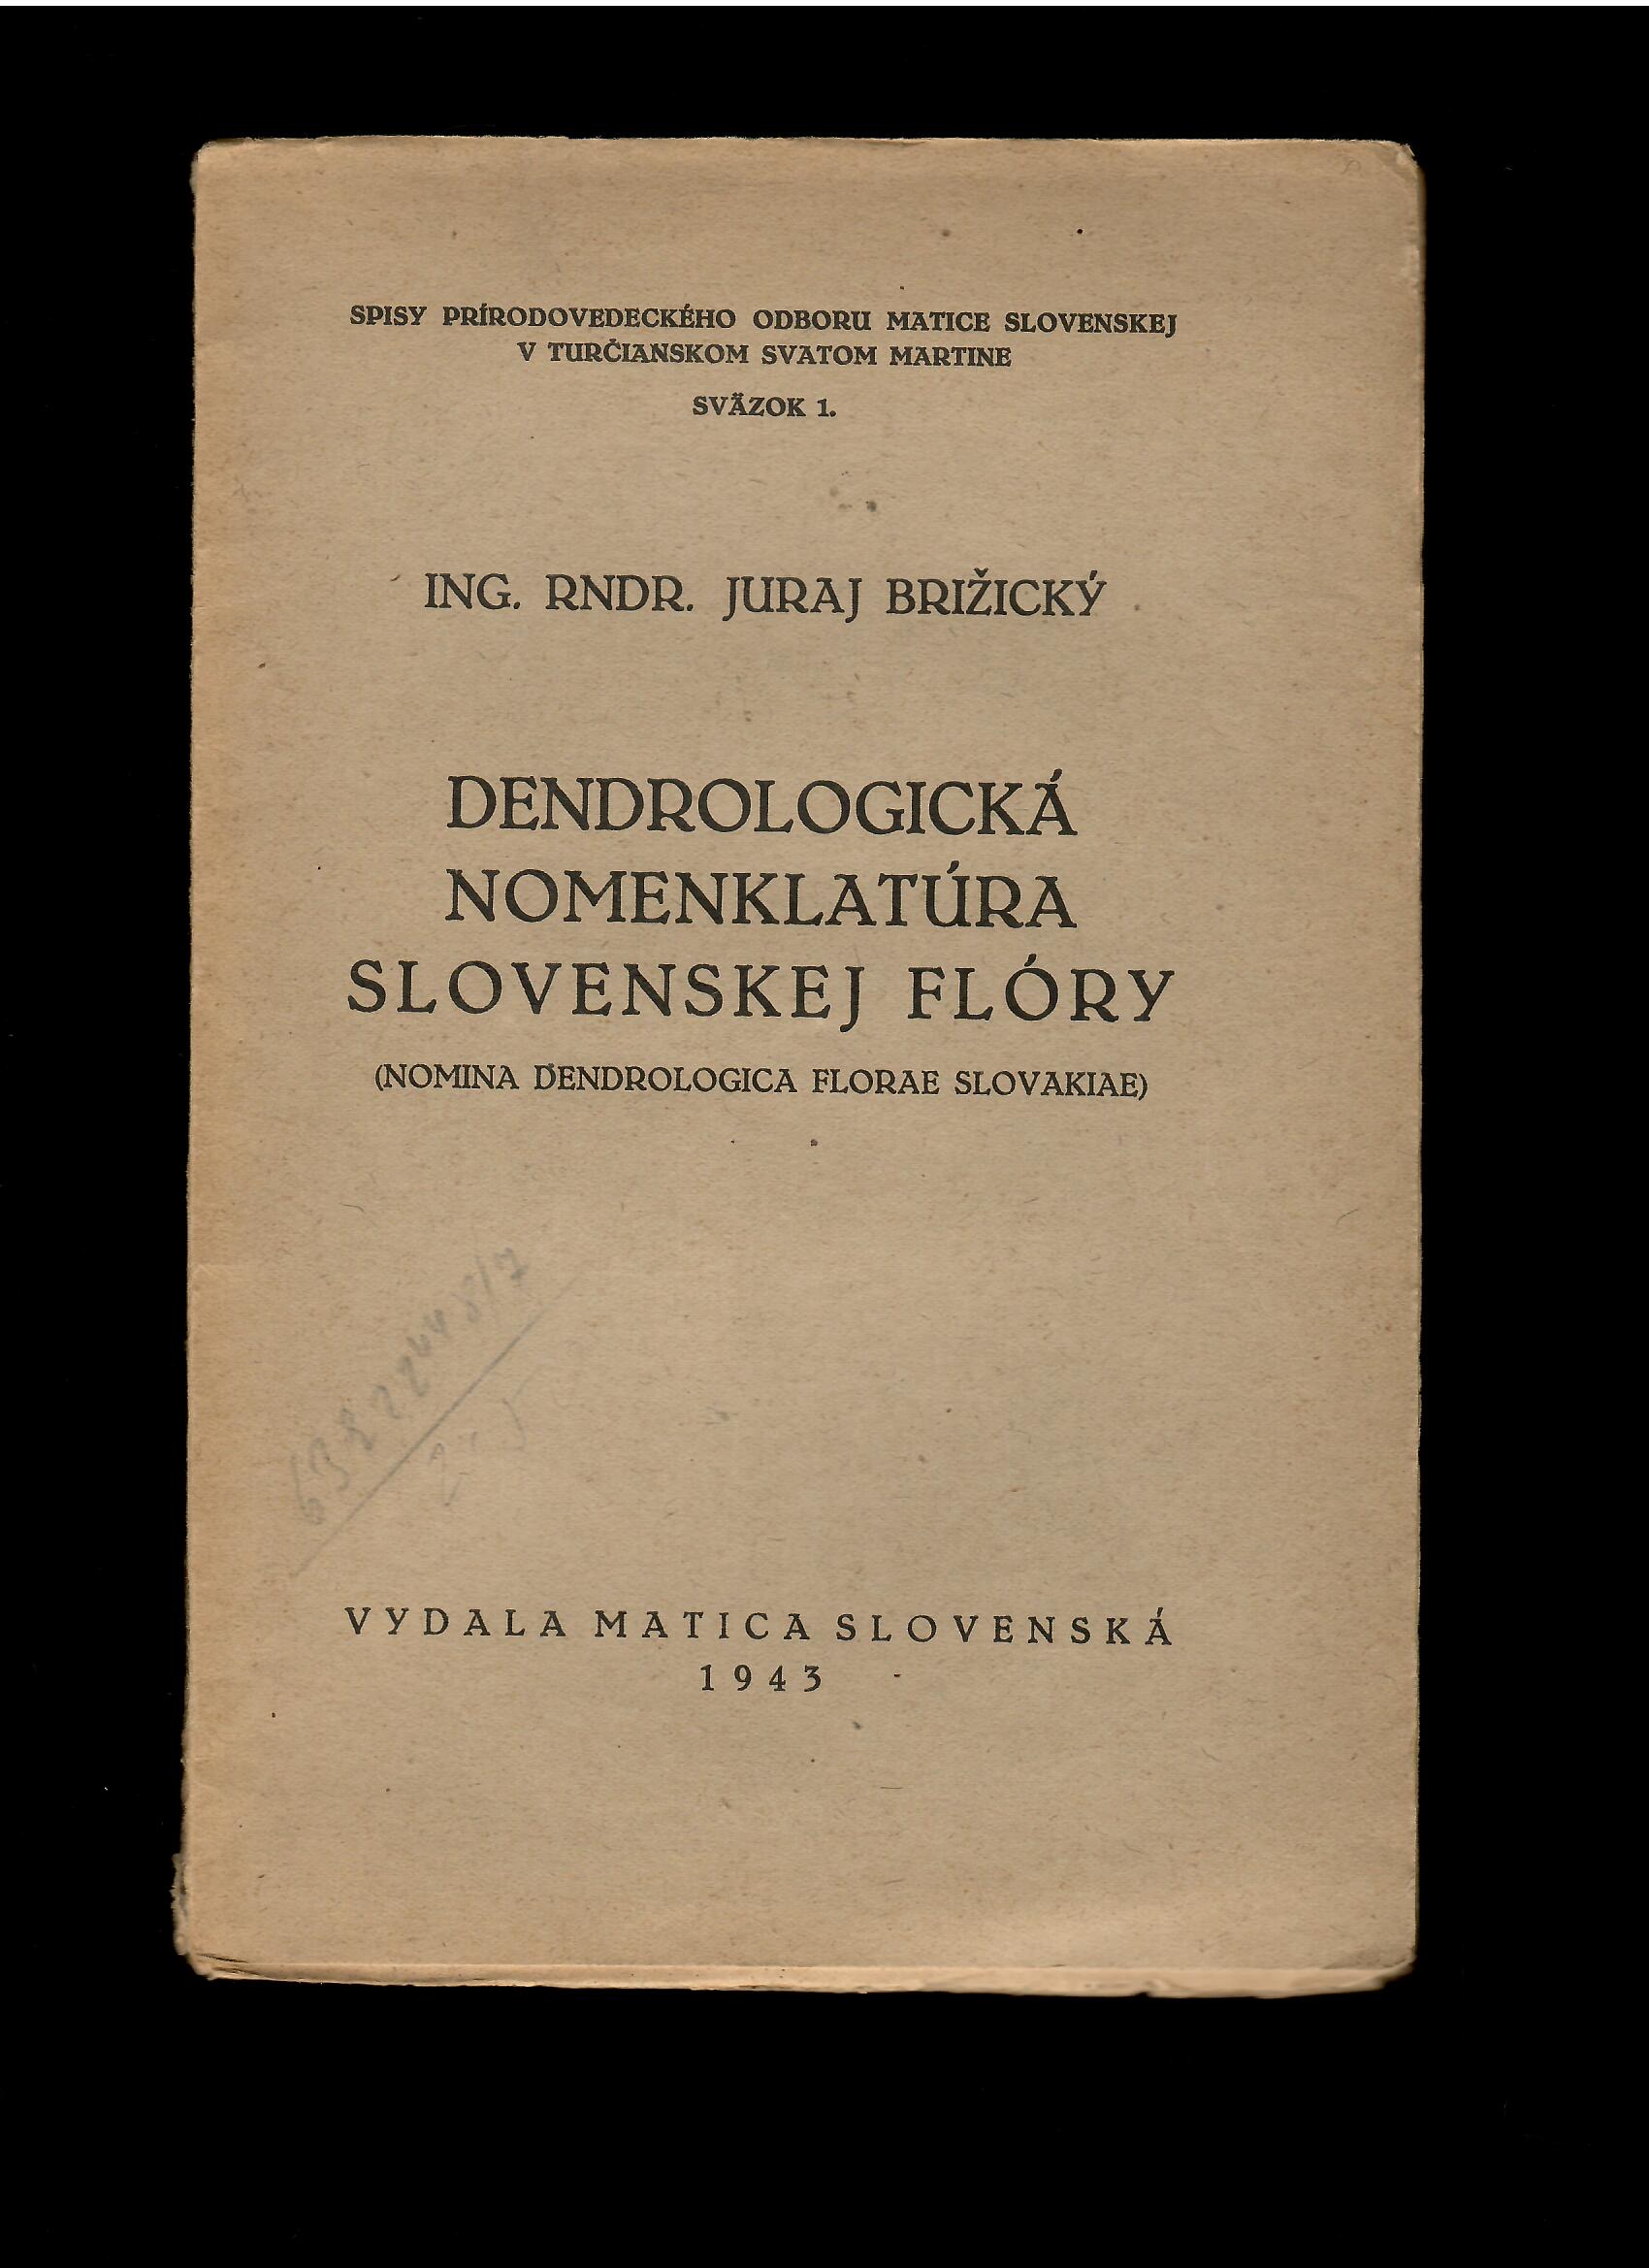 Juraj Brižický: Dendrologická nomenklatúra slovenskej flóry /1943/